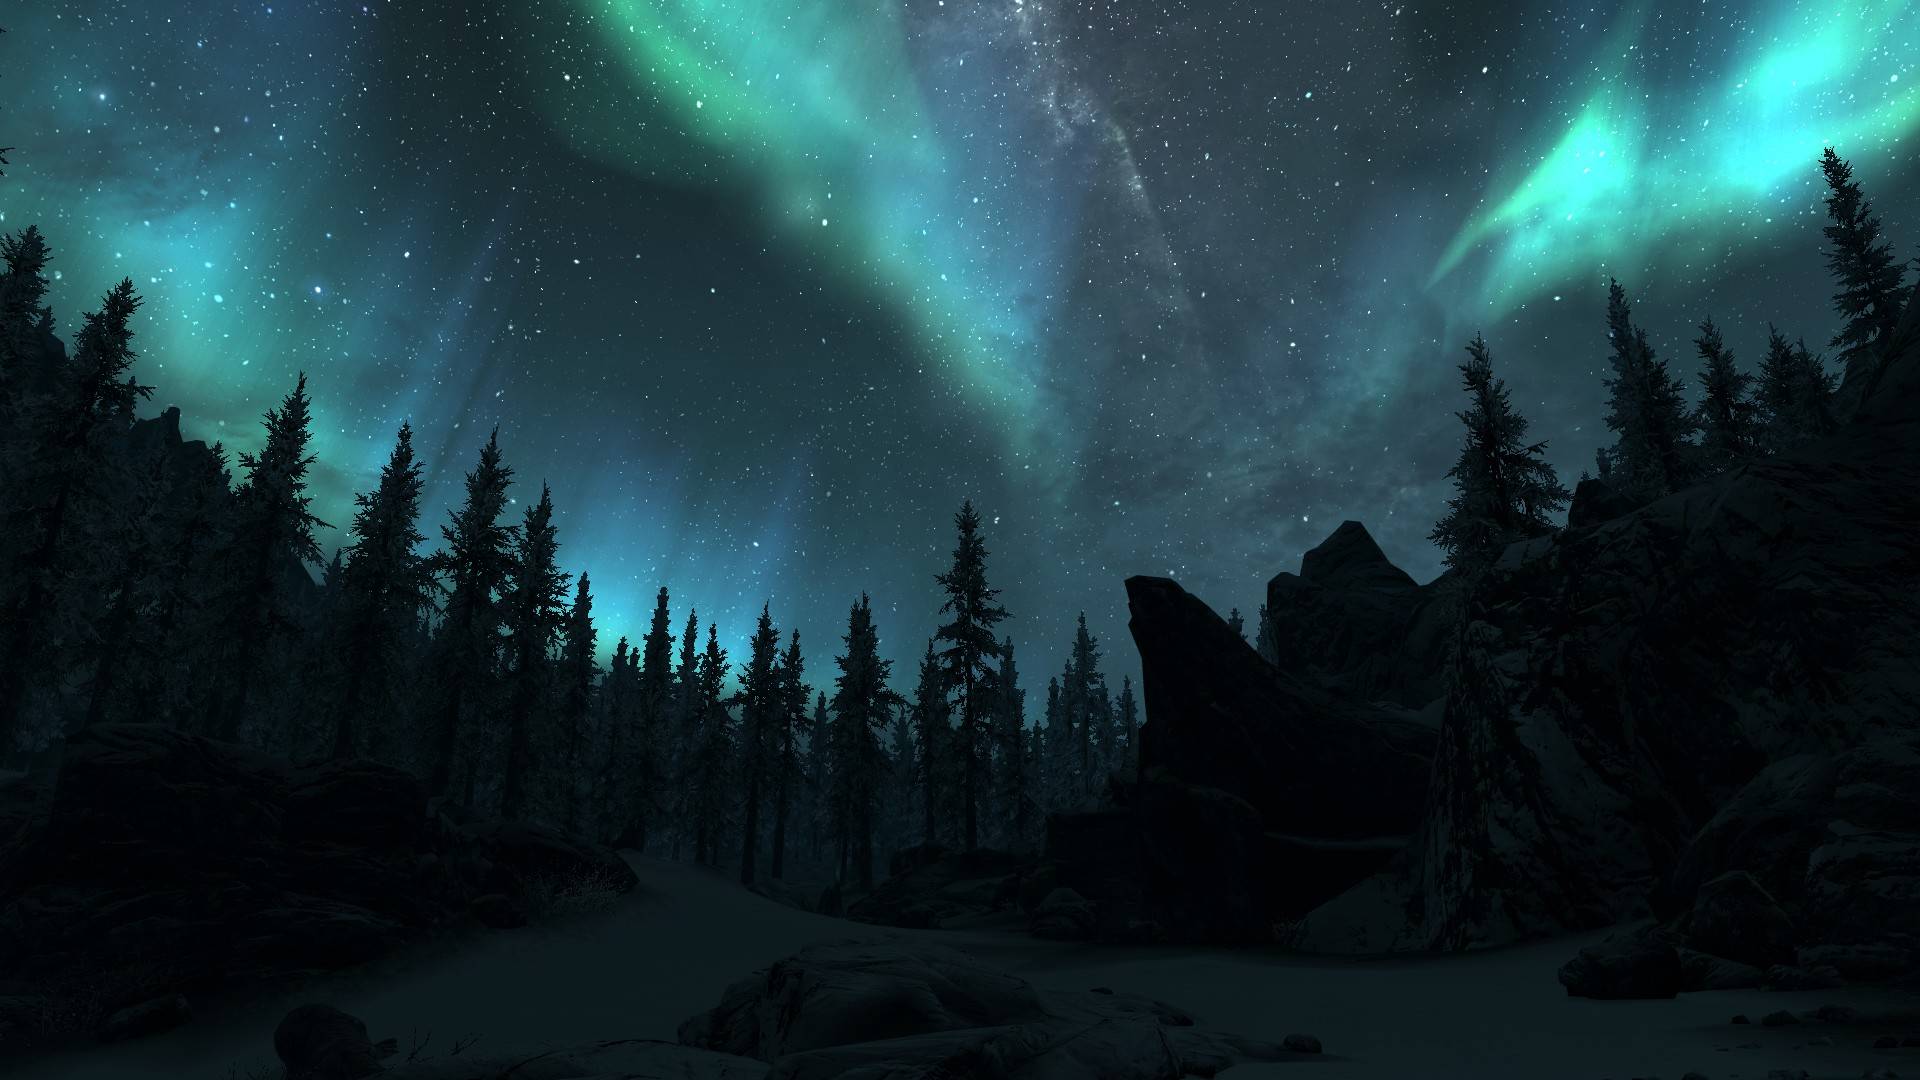 Tải ảnh nền đẹp bắc cực ánh sáng: Chỉ cần một cú nhấp chuột, bạn có thể tải được những bức ảnh huyền ảo về bắc cực ánh sáng đẹp nhất trên internet. Mở ra một thế giới hoàn toàn mới ngay trên màn hình của bạn.